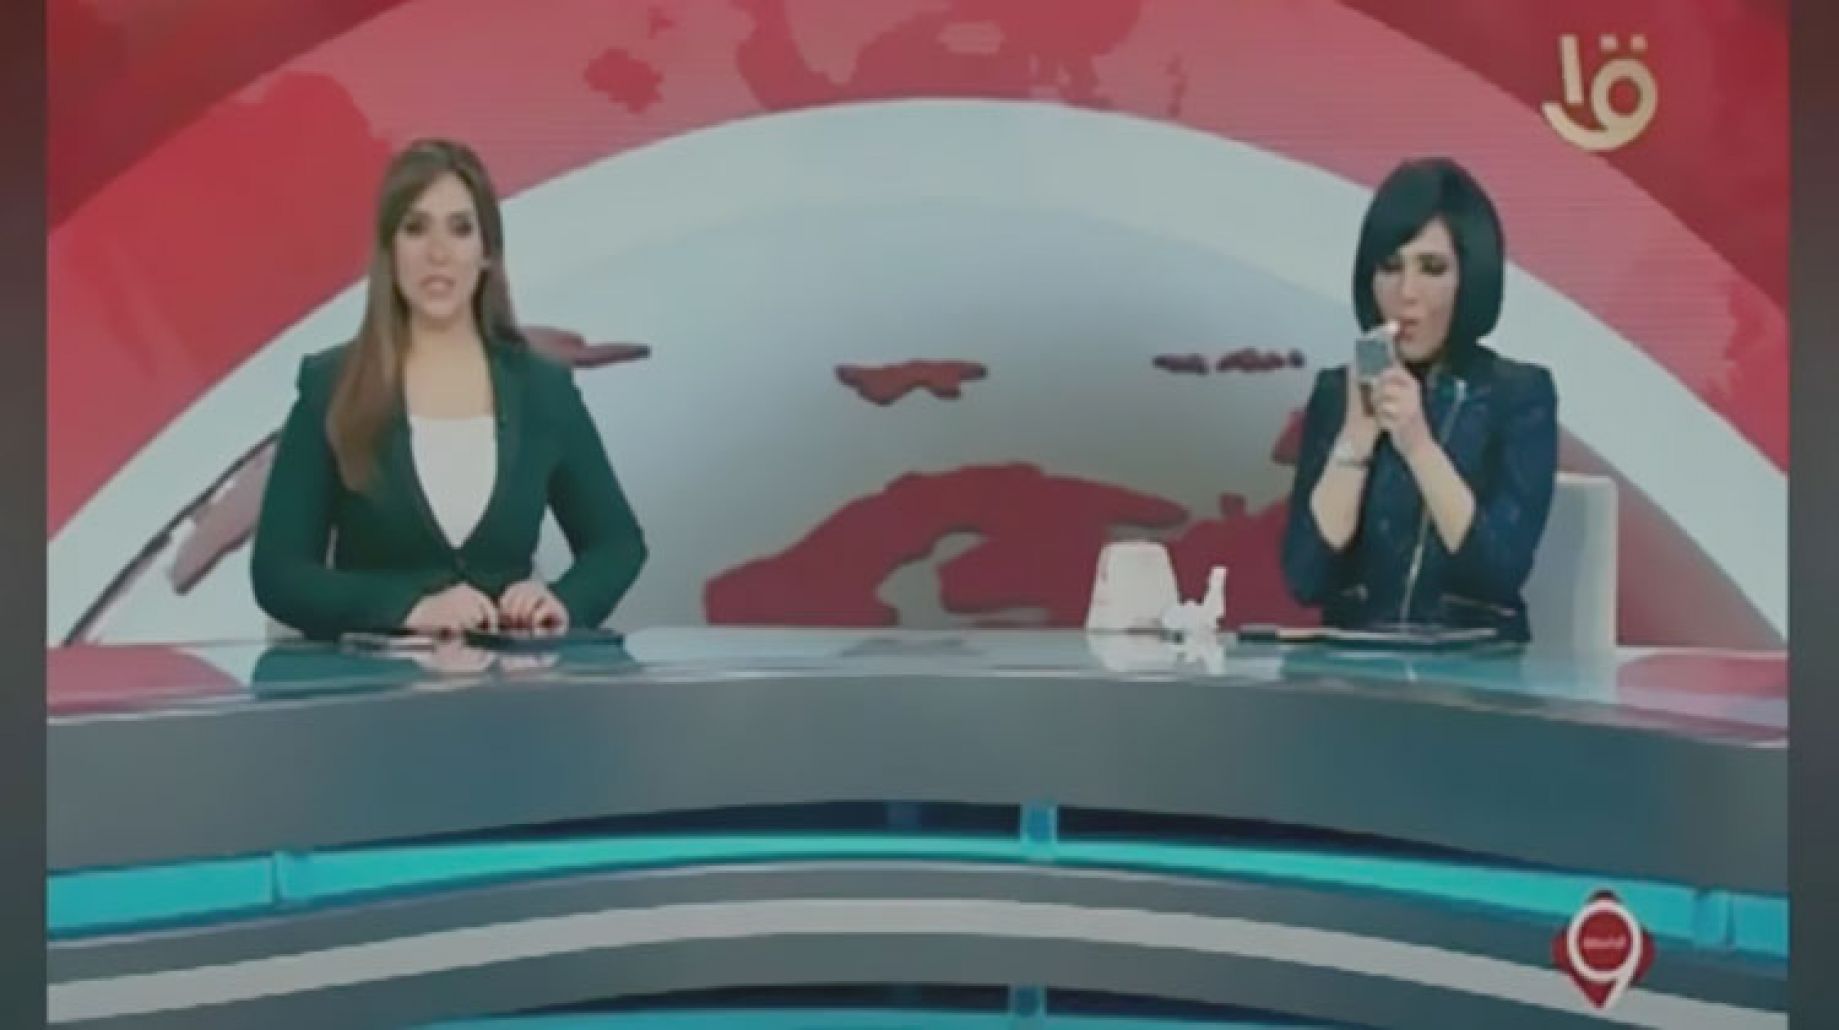 بالفيديو.. مذيعة القناه الأولى تضع روج على الهواء أثناء نشرة التاسعة وأول قرار ضدها وفريق العمل